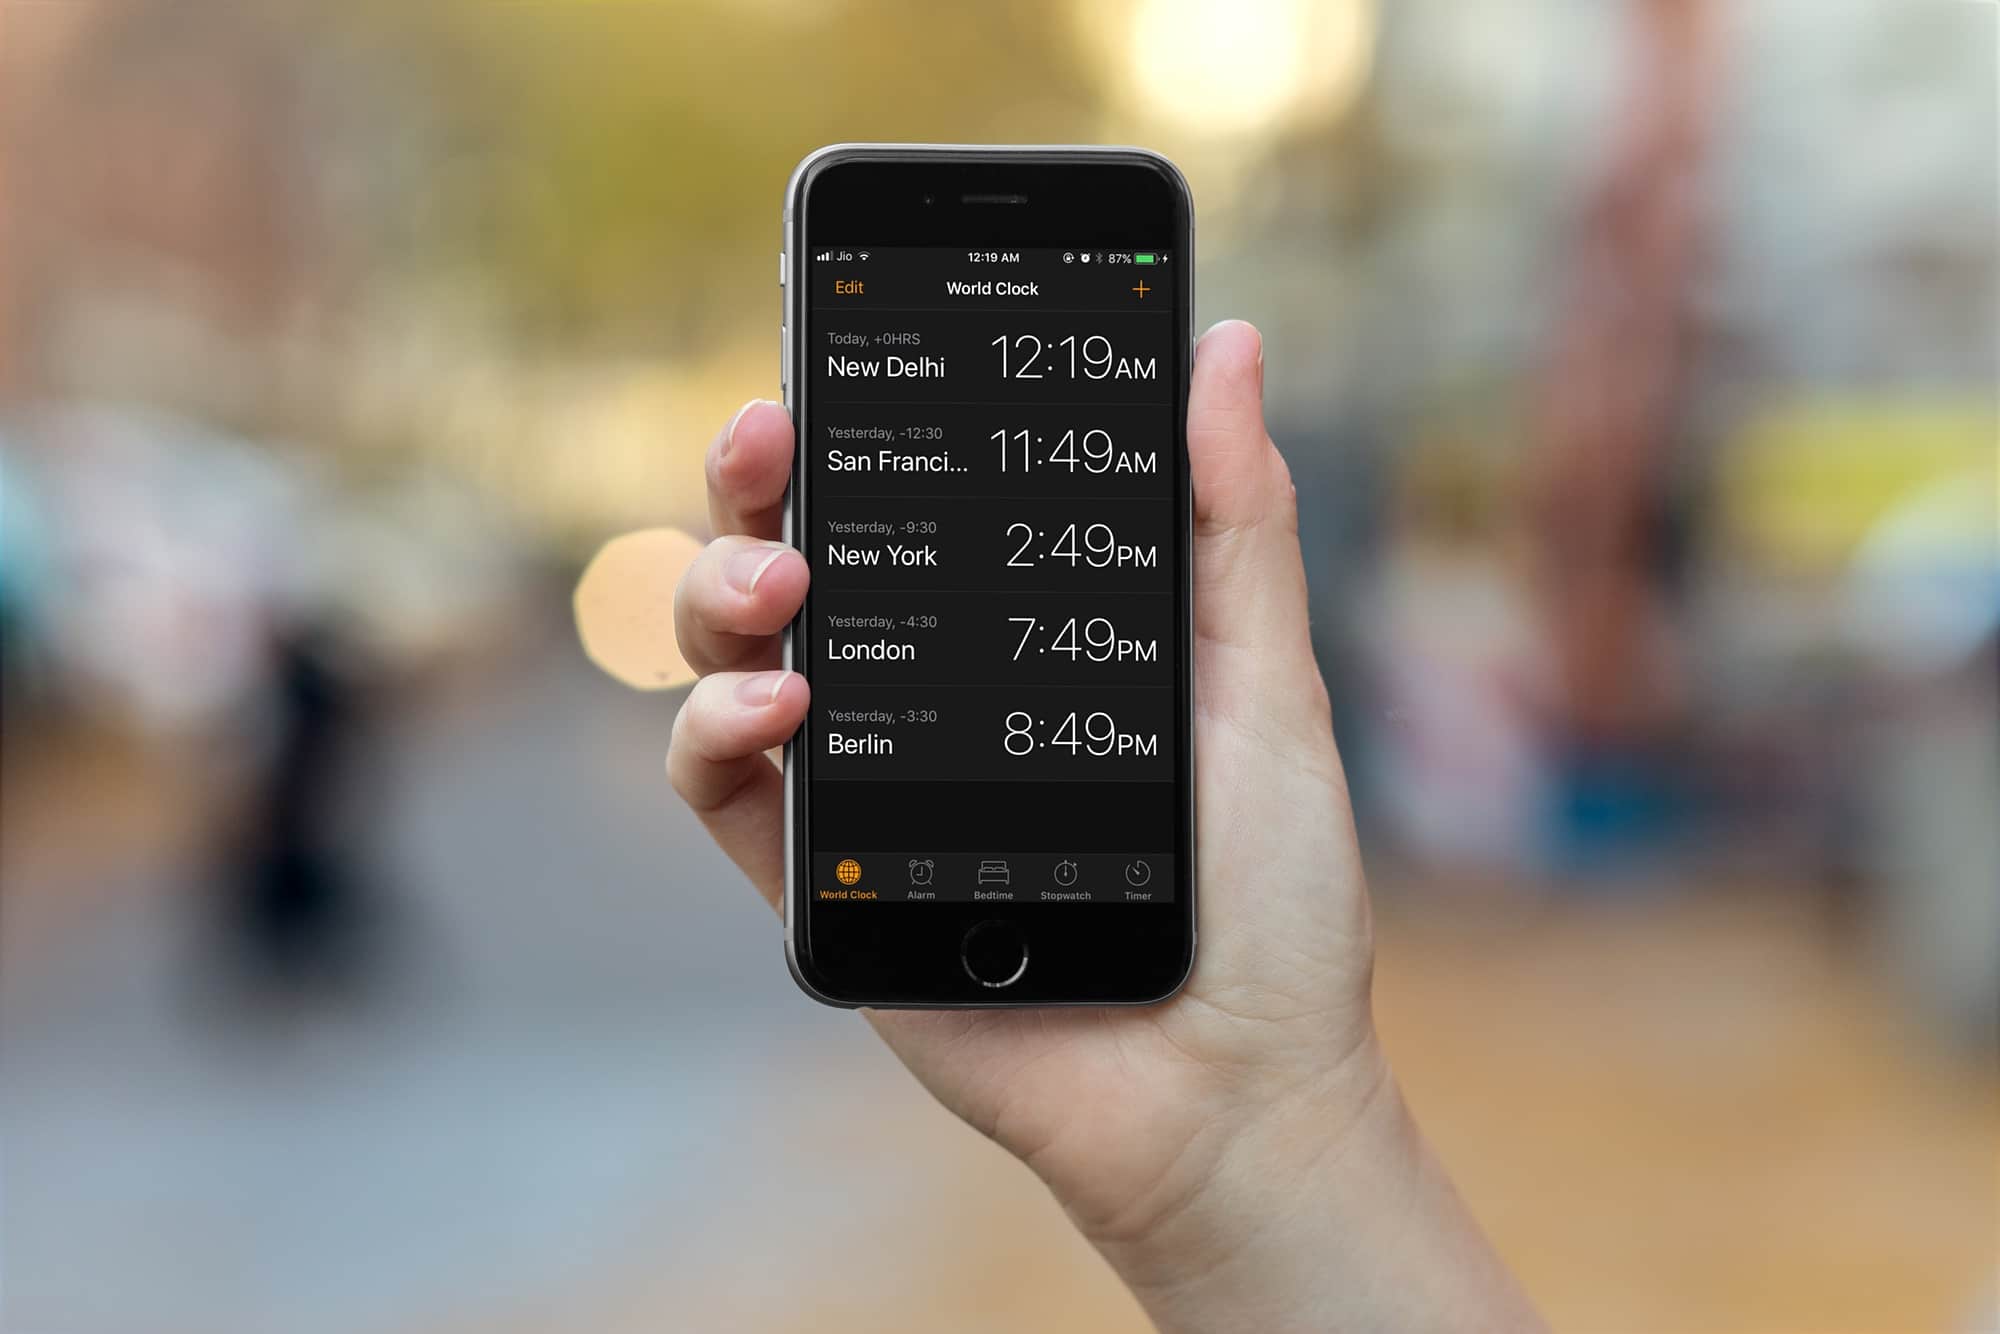 iOS 11's Smart Invert feature brings a stunning dark mode